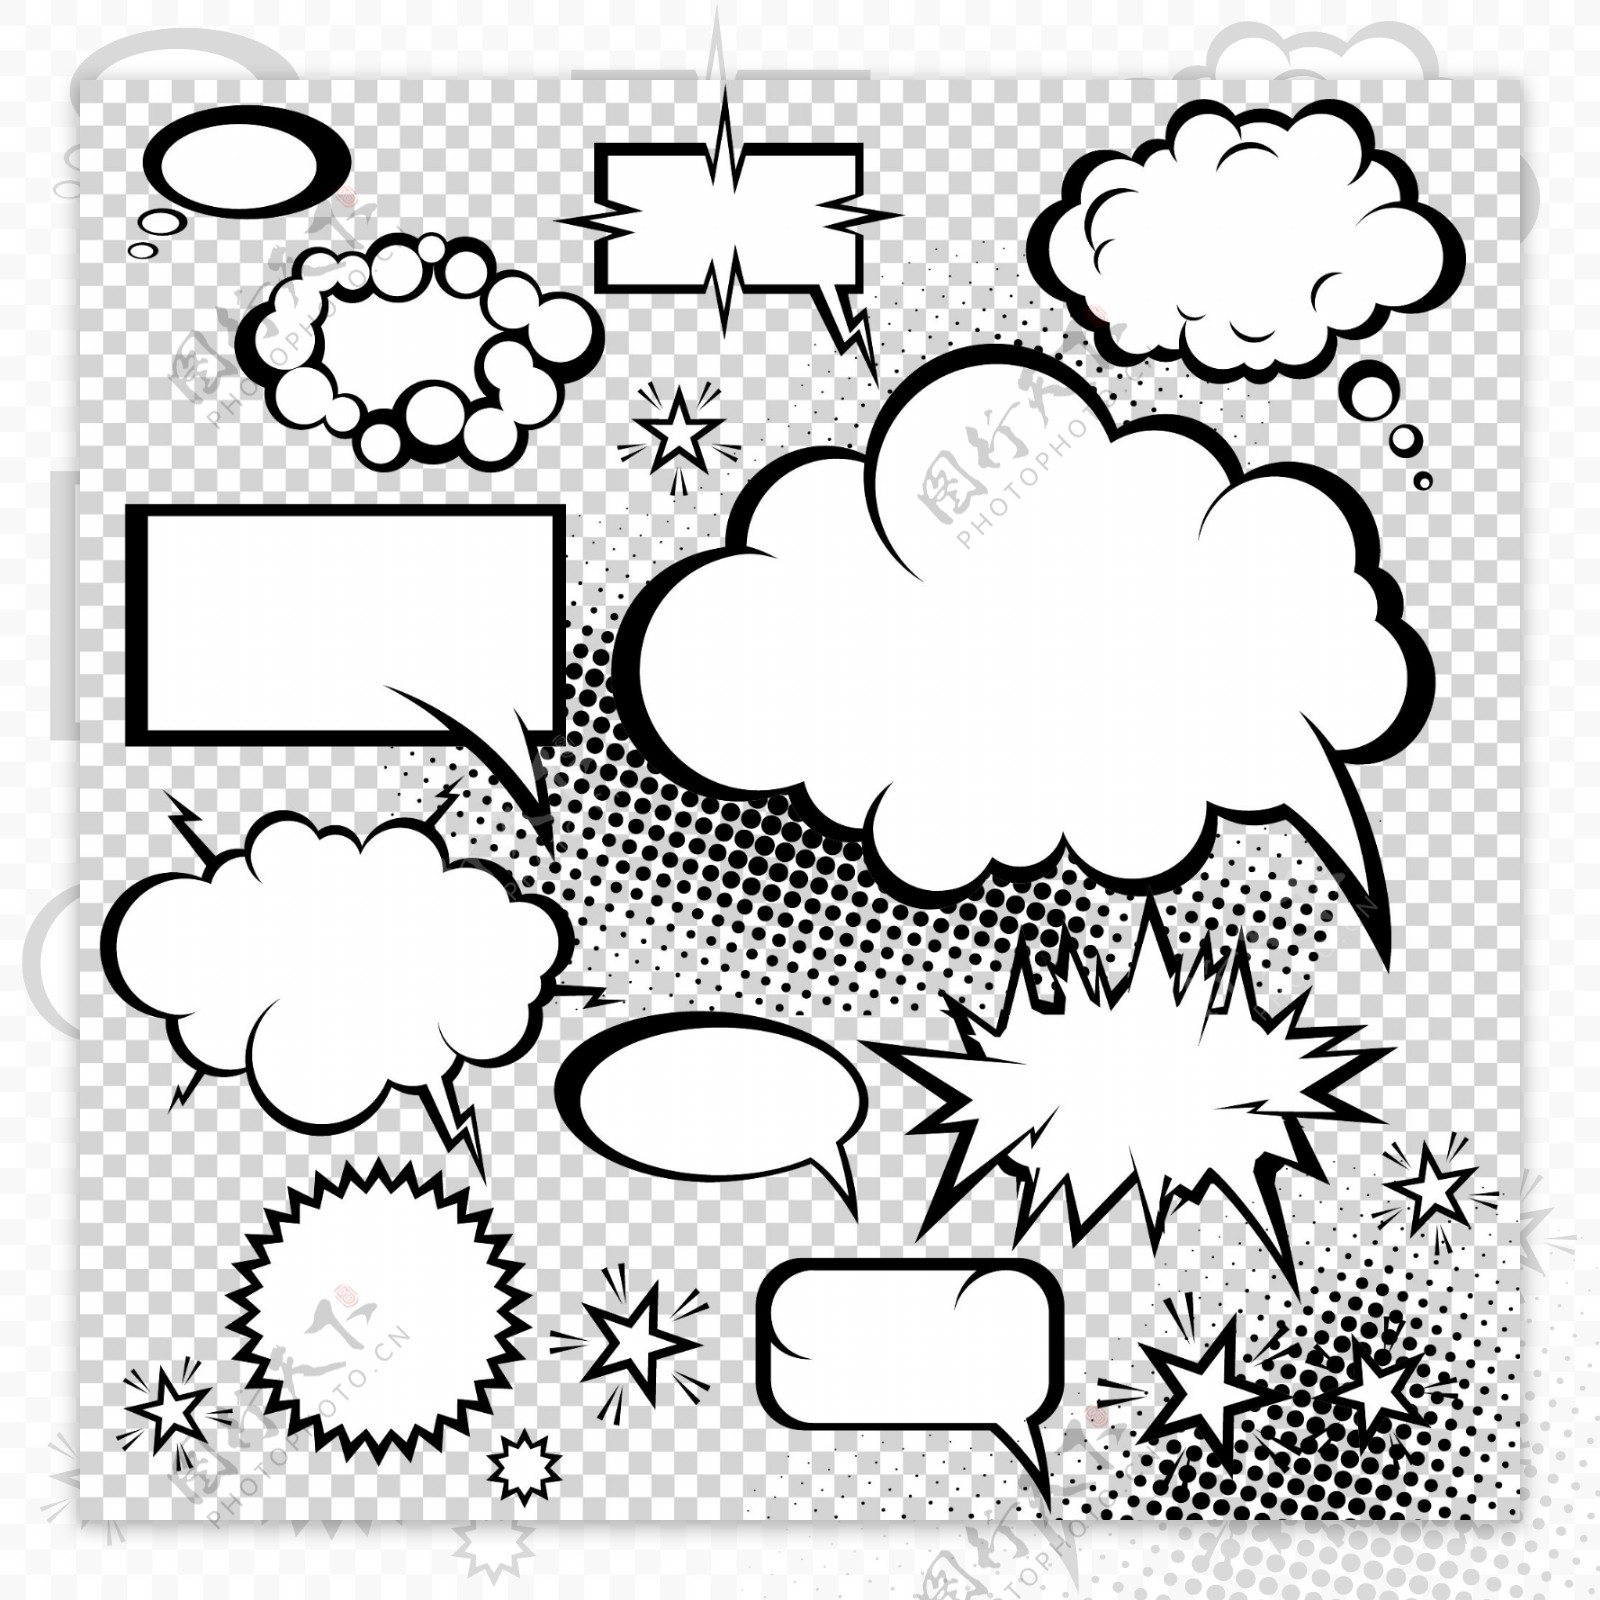 漫画风格的蘑菇云对话框05矢量素材